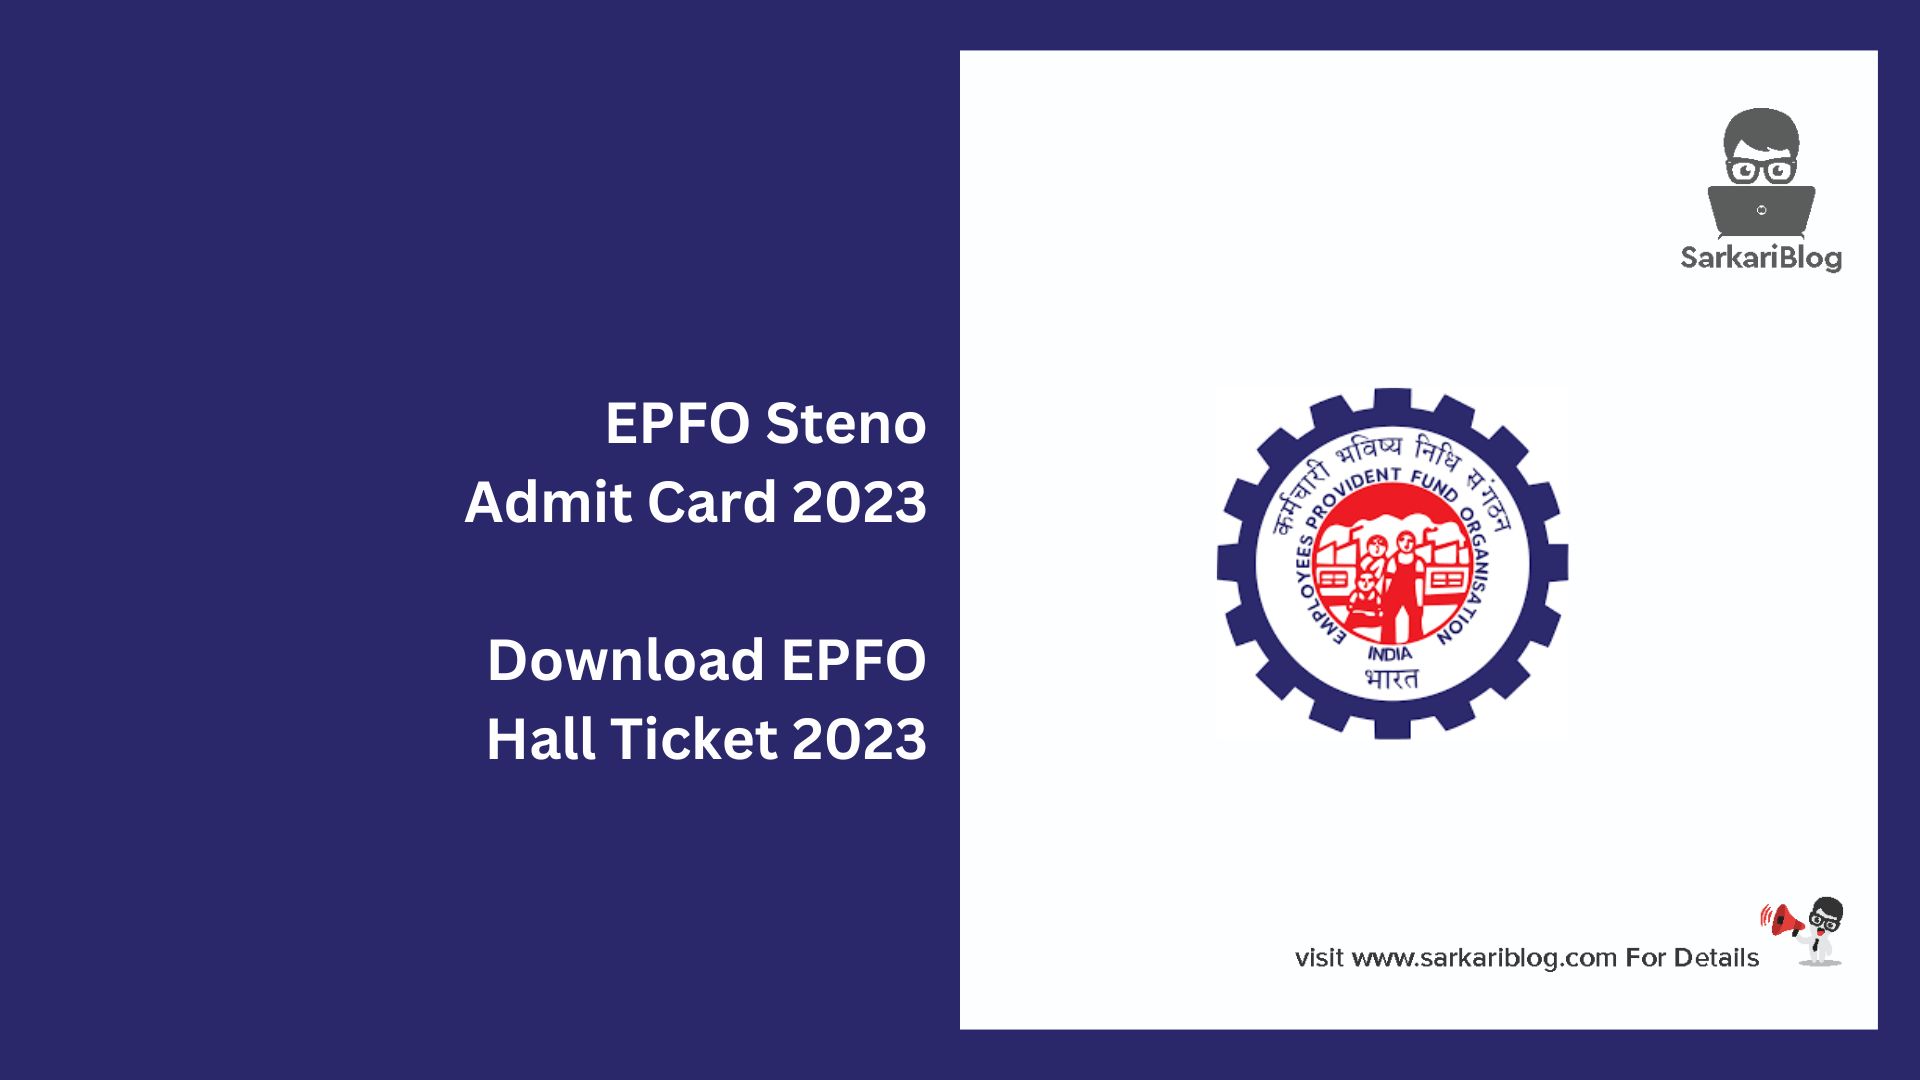 EPFO Steno Admit Card 2023